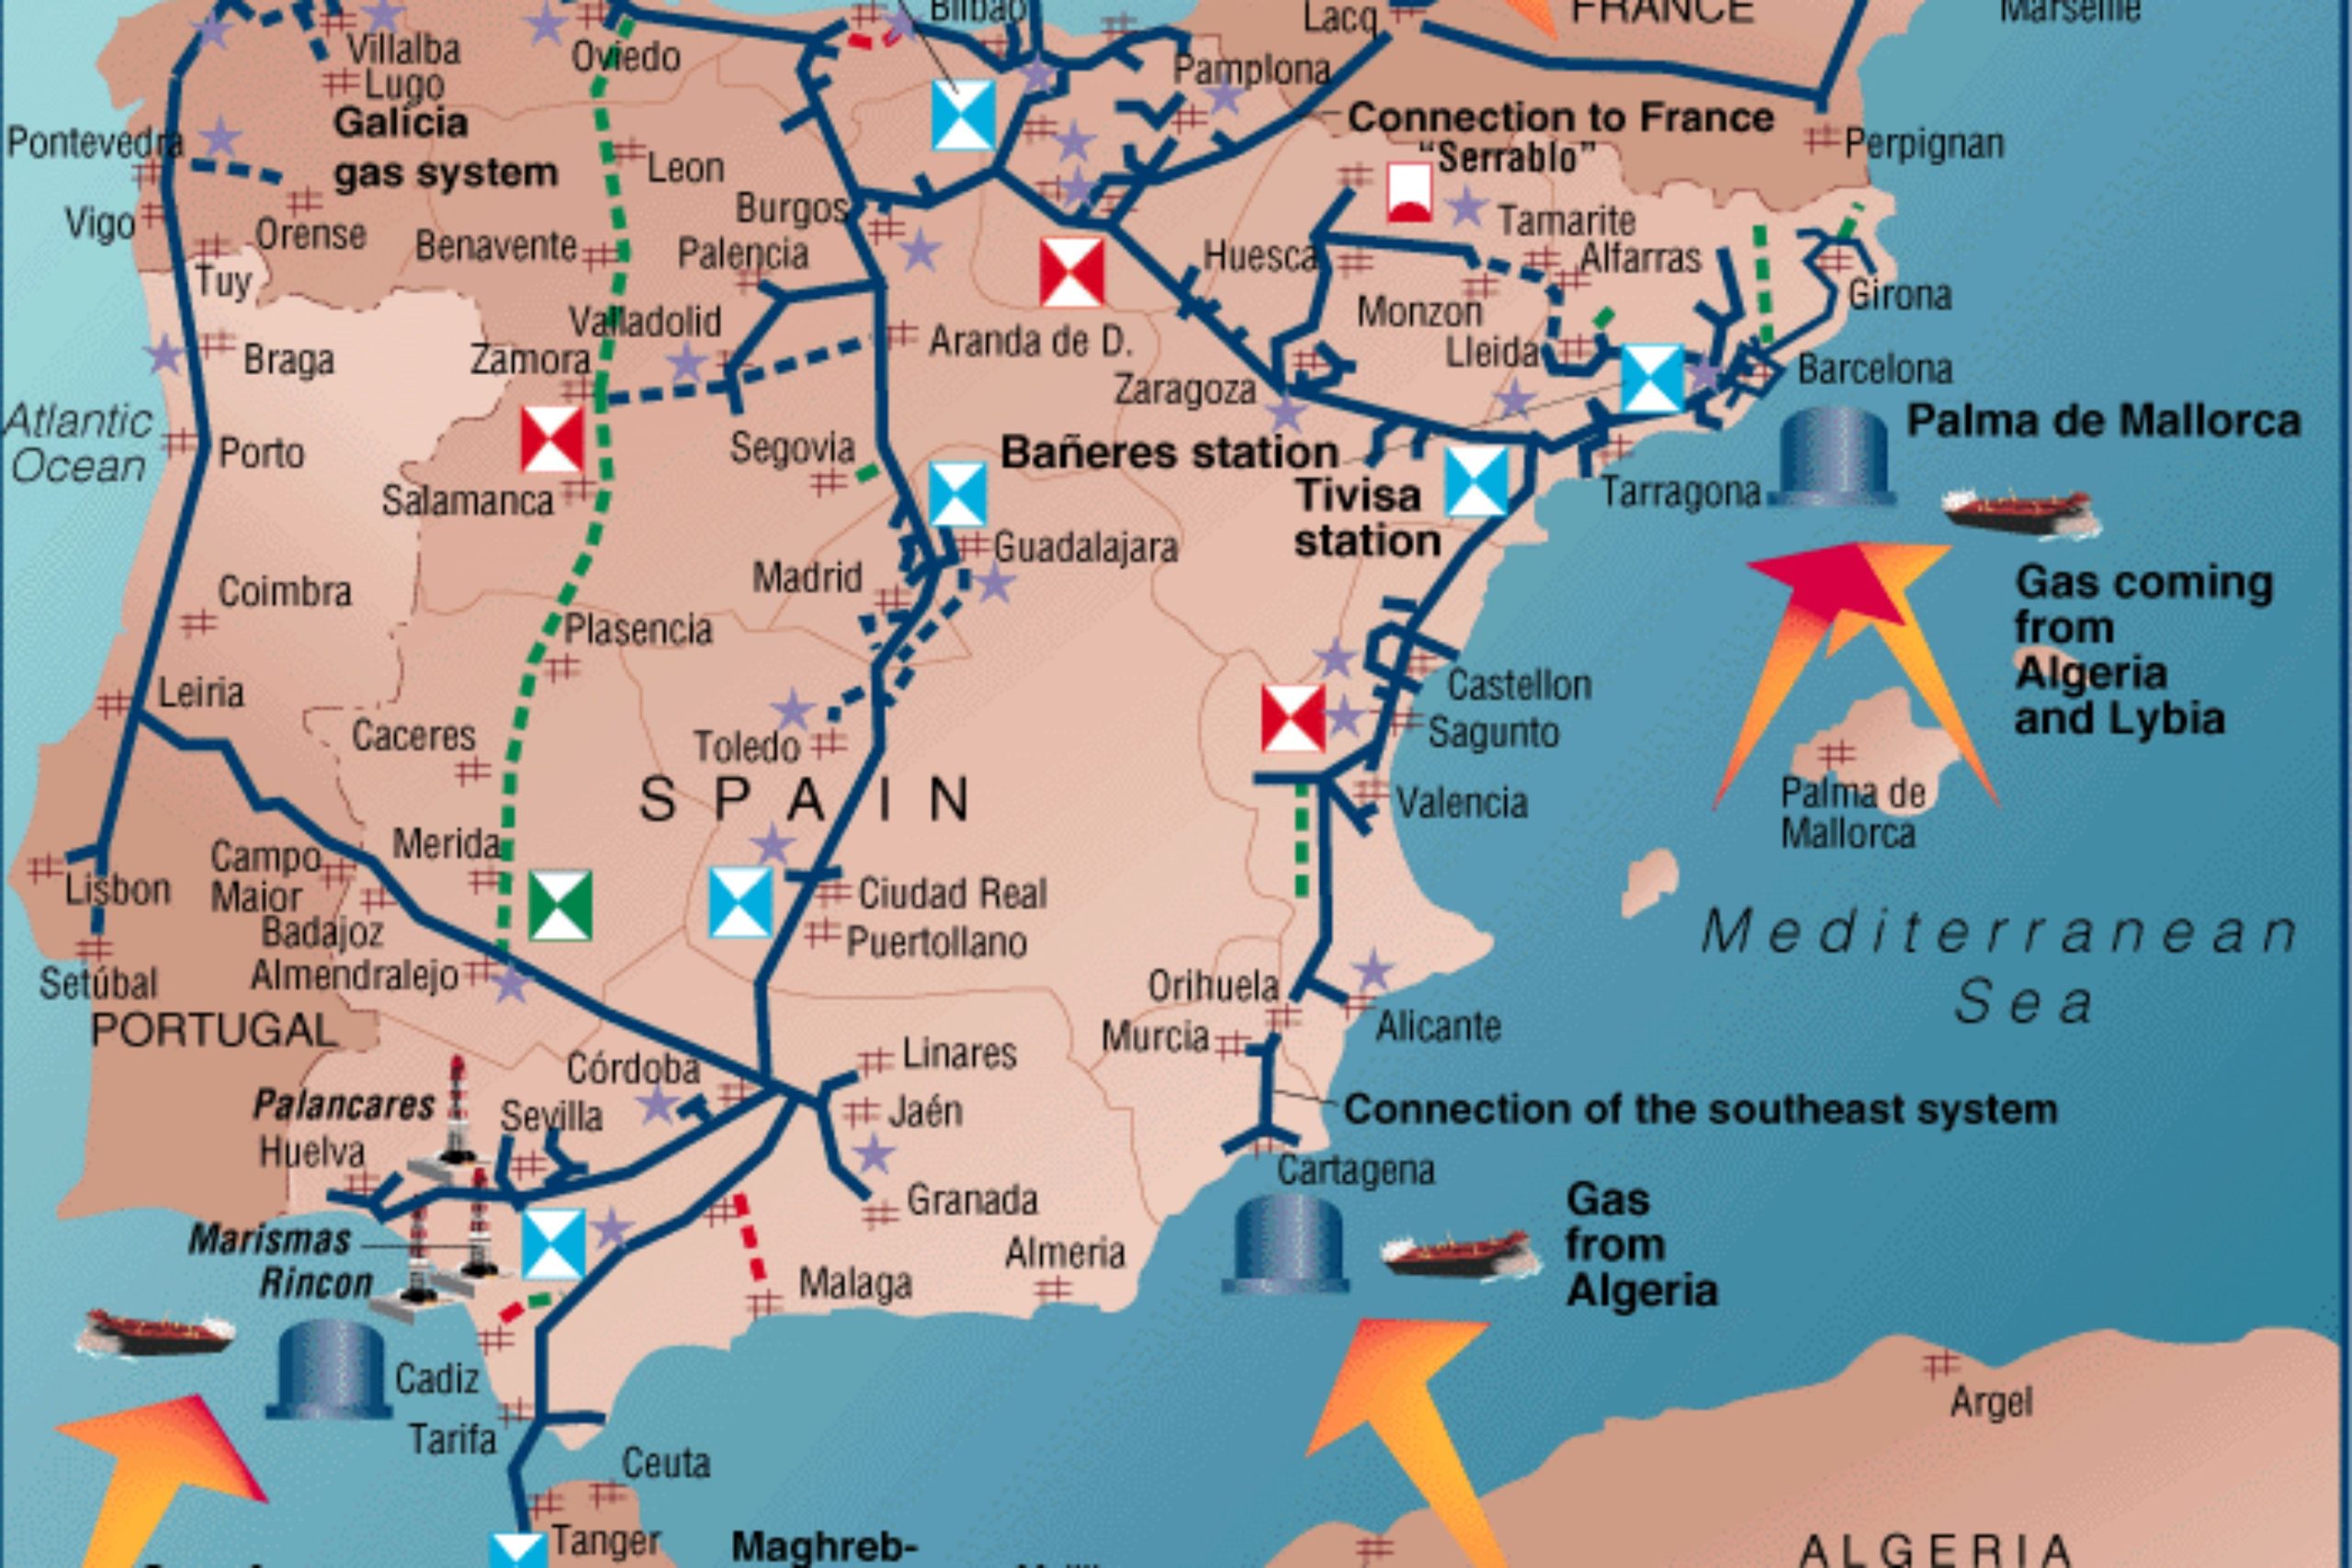 Spania ar putea deveni o nouă placă turnantă a gazului în Europa